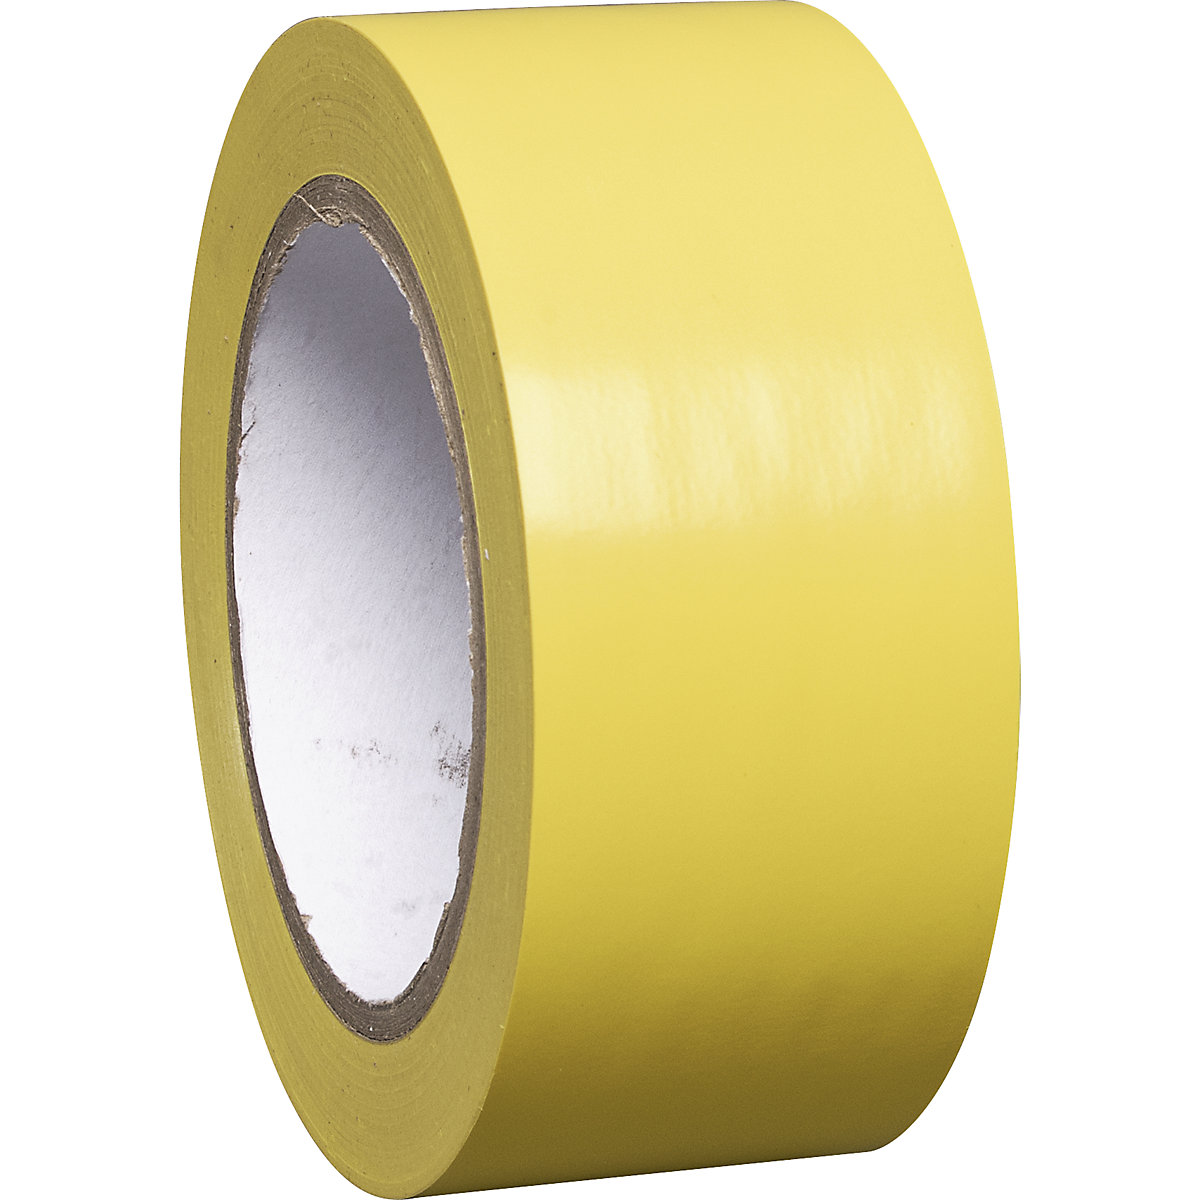 Traka za označavanje podova od vinila, jednobojna, širina 50 mm, u žutoj boji, pak. 8 rola-6